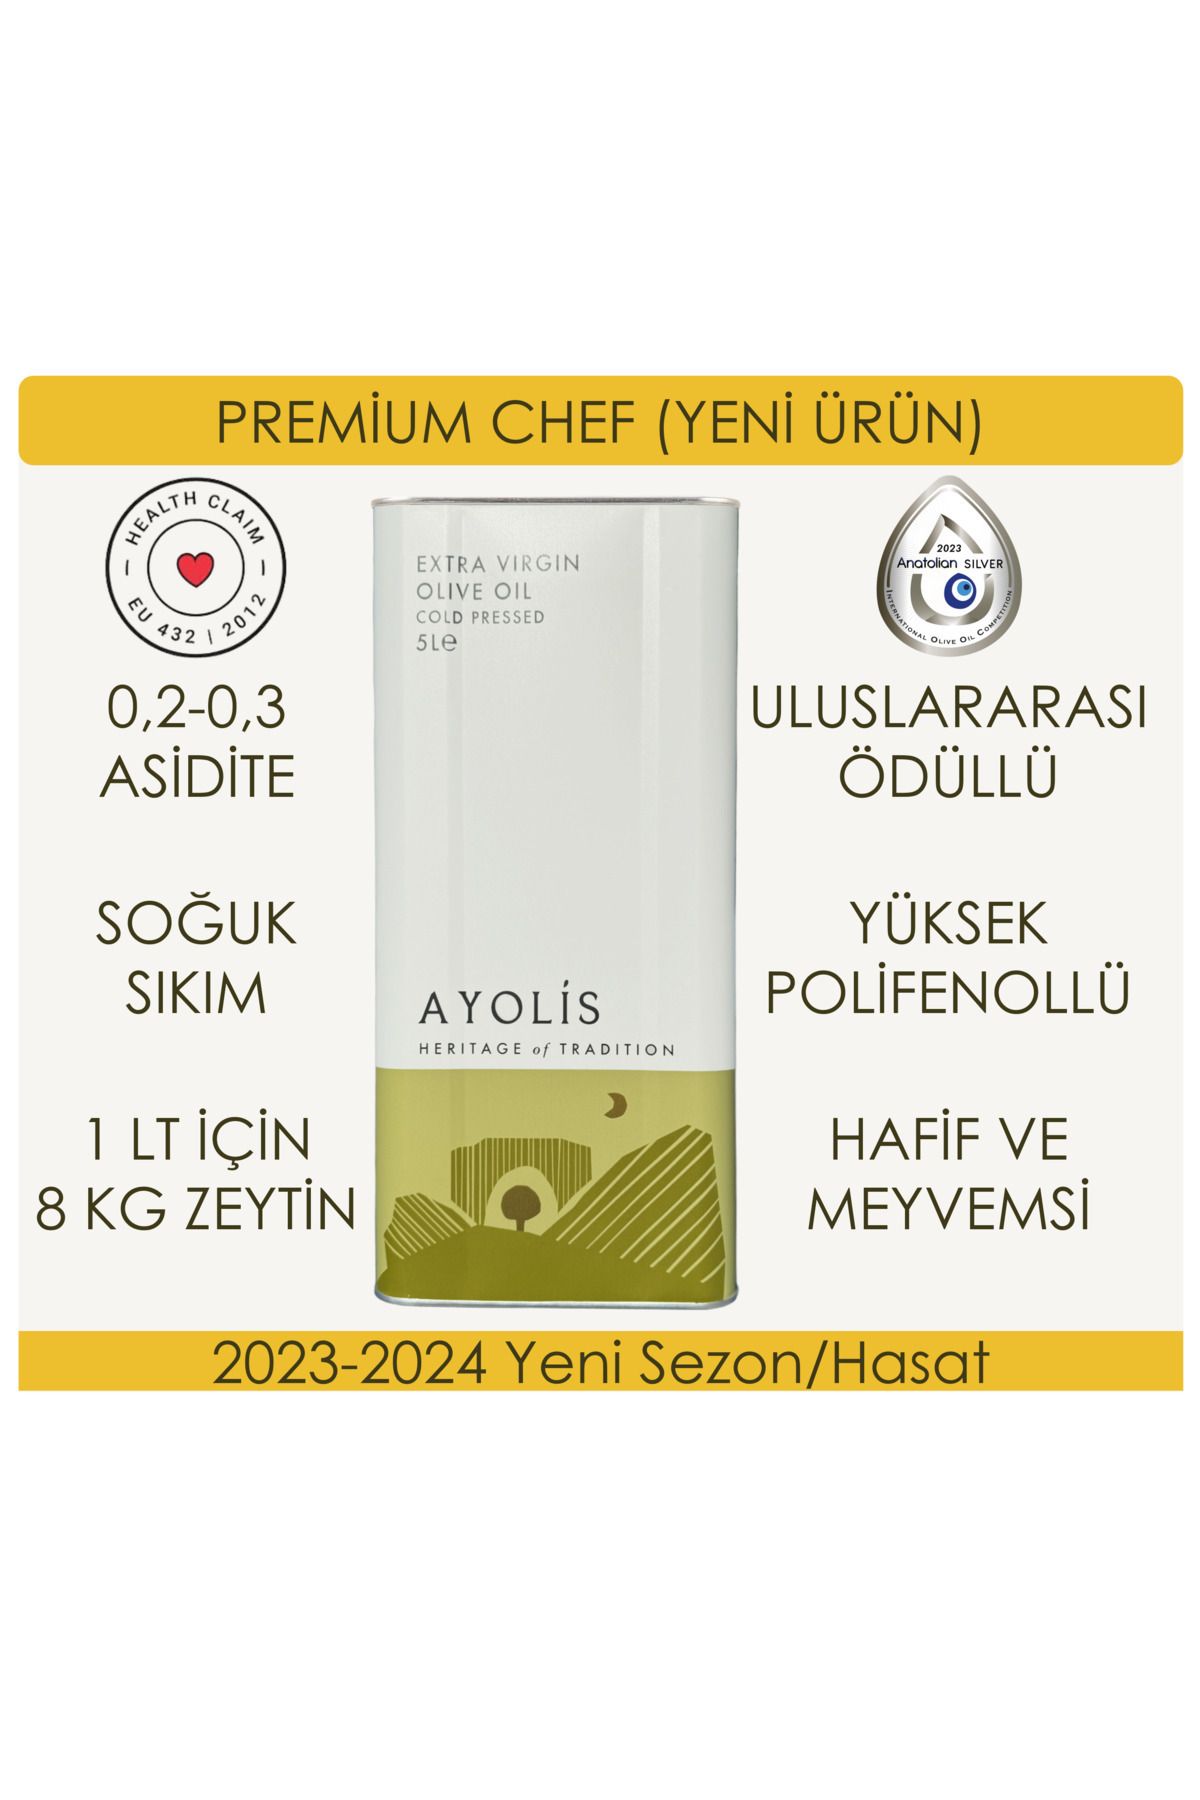 Ayolis Premium Chef 5 Lt Soğuk Sıkım Natürel Sızma Zeytinyağı